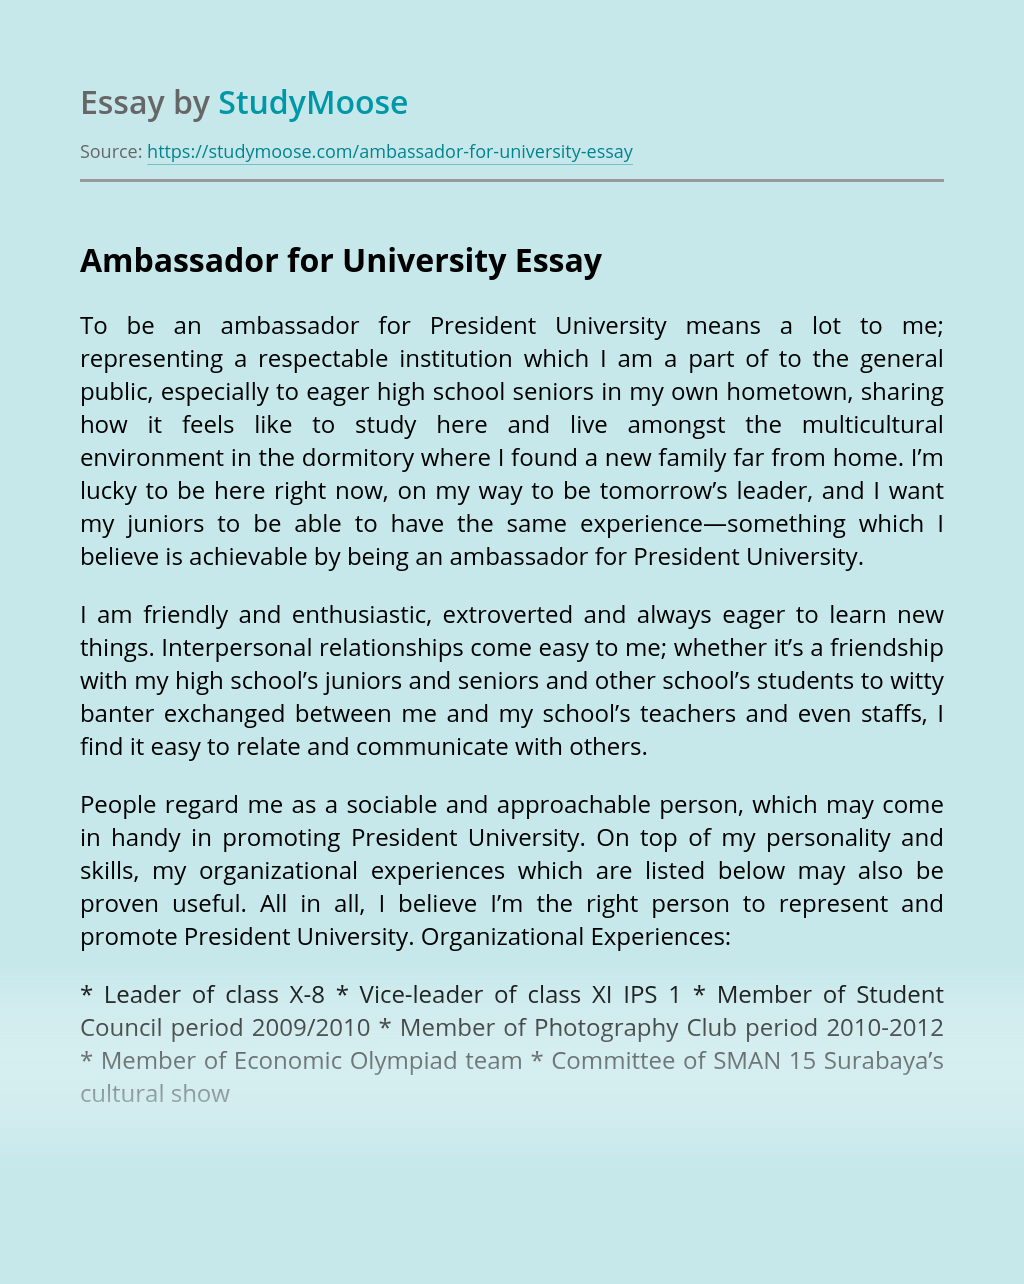 How to Write a OnePlus Student Ambassador Essay